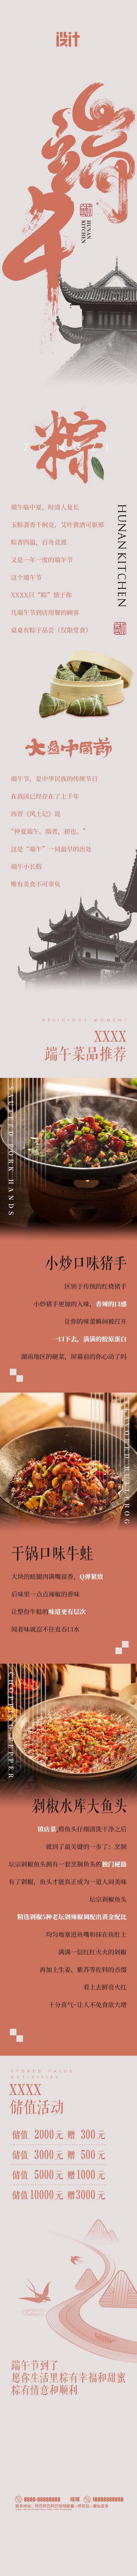 【南门网】专题设计 餐饮 中国传统节日 端午节 美食 长图 粽子 菜品